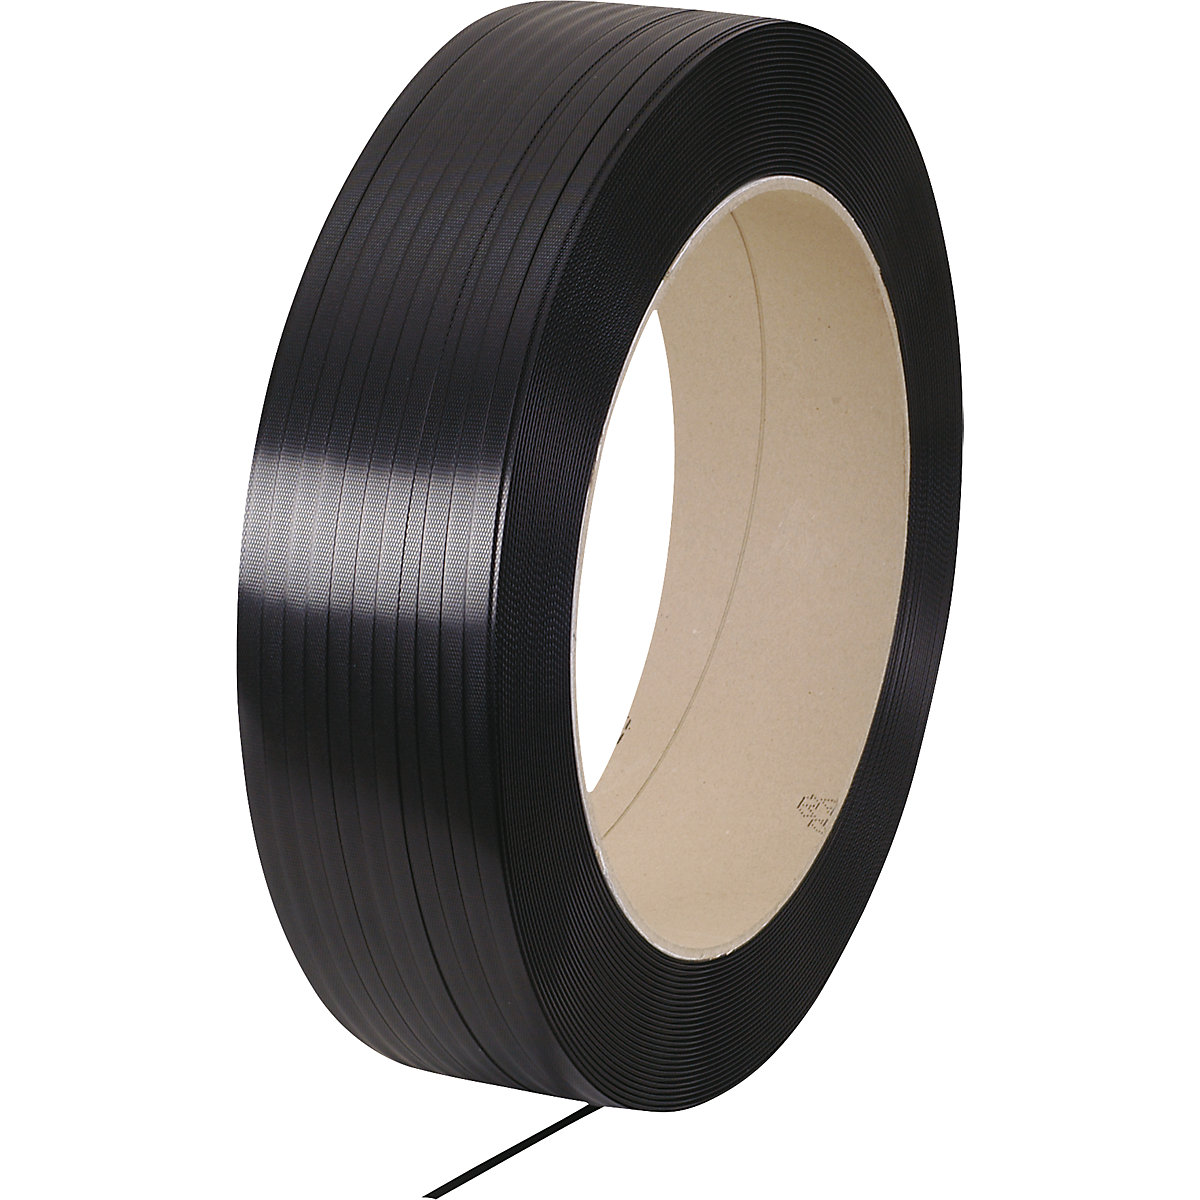 Umreifungsband PP, Bandlänge 2000 m, Bandbreite 12,7 mm, Stärke 0,7 mm, schwarz, ab 10 Stück-1